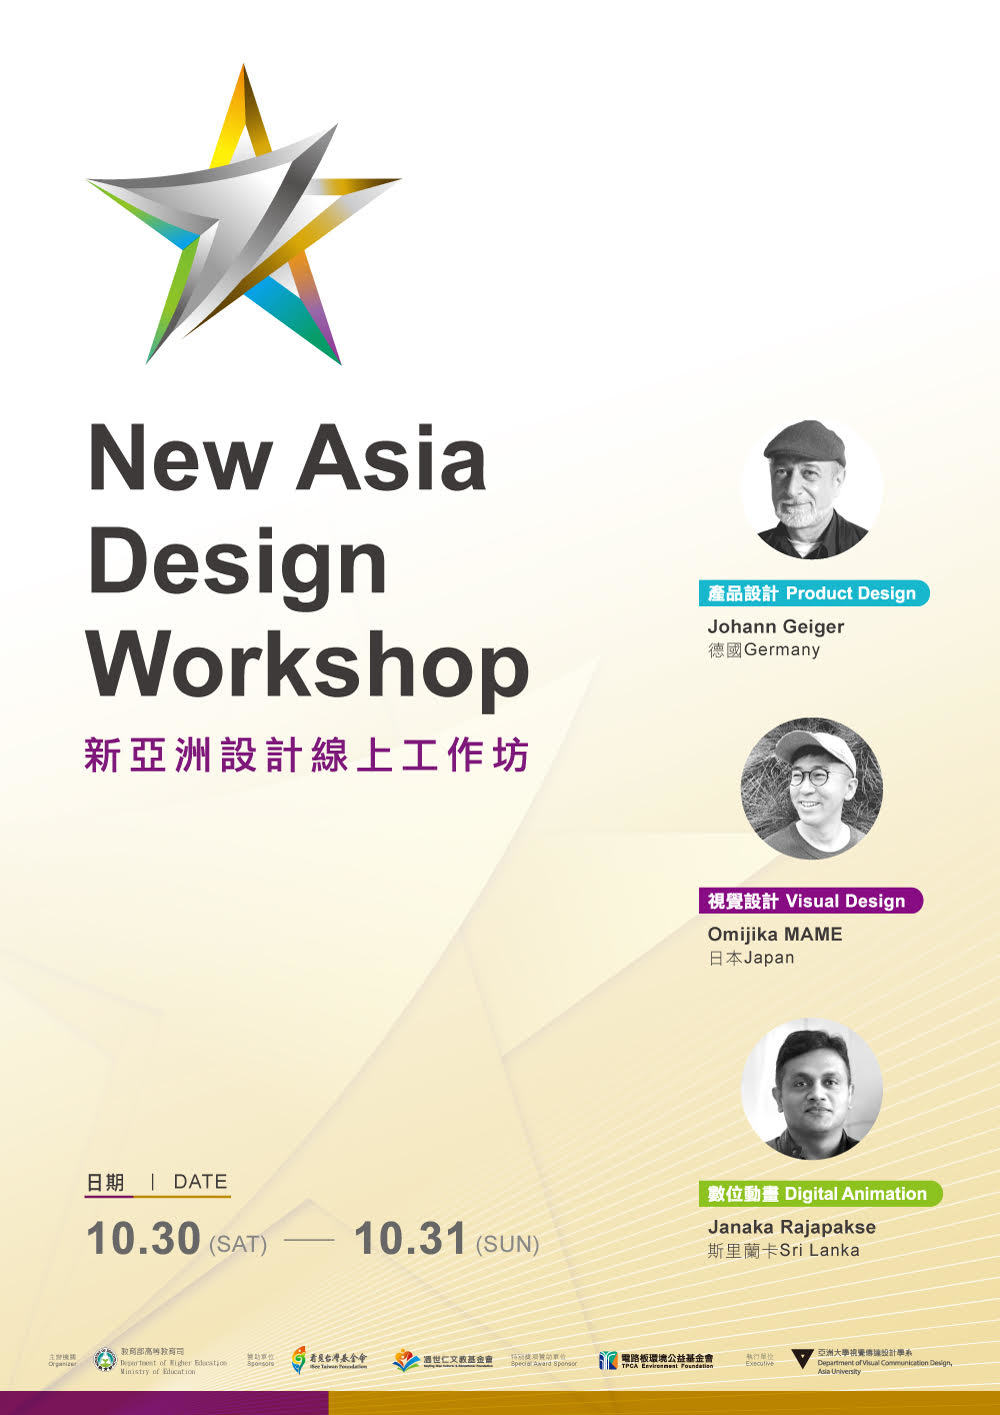 2021年新亚洲设计工作坊登场！就在10/30~10/31！ | 亚洲大学视觉传达  image